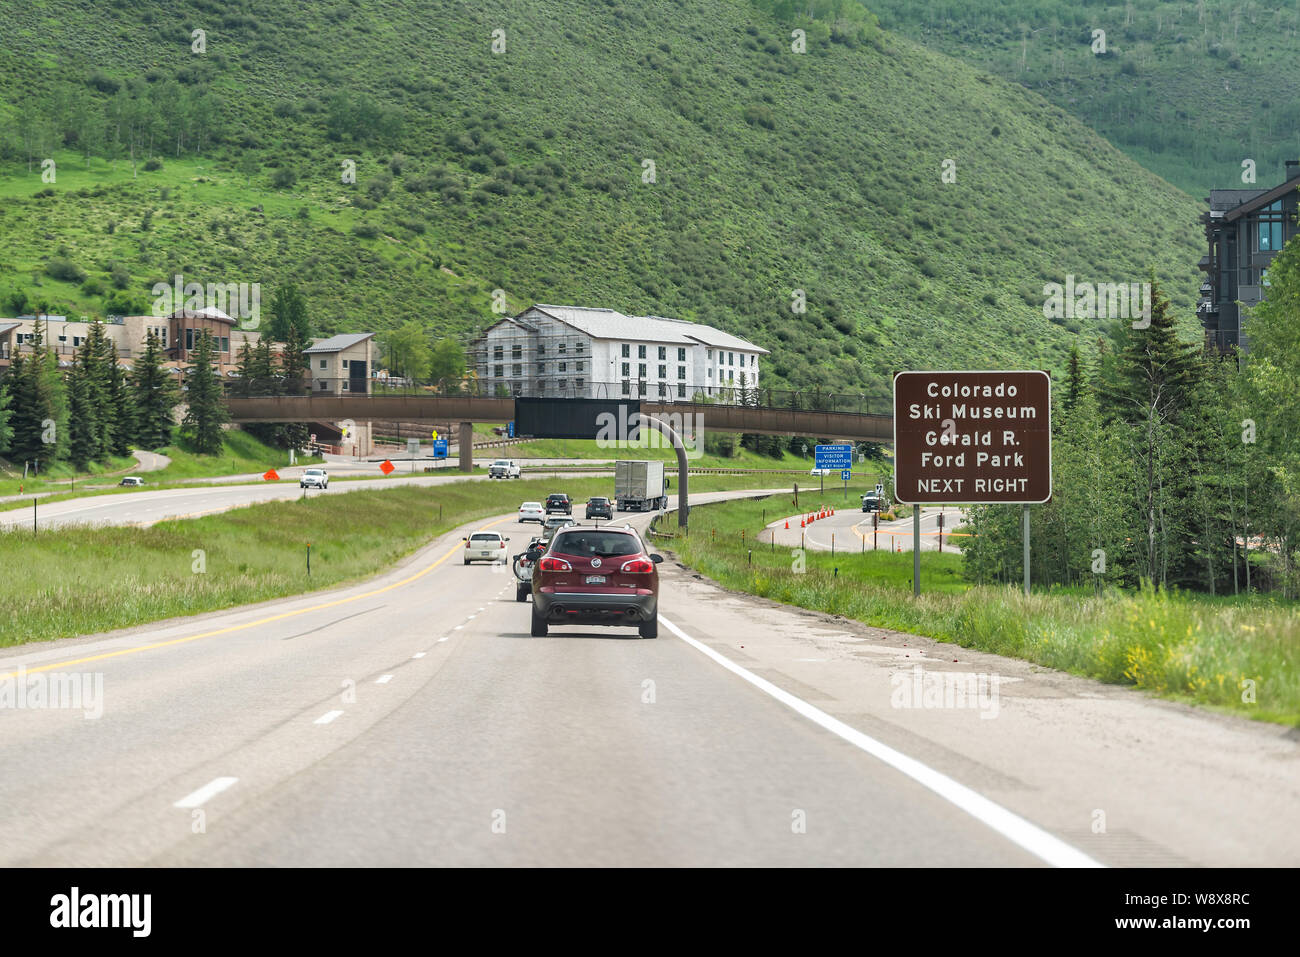 Vail, USA - 29. Juni 2019: Straße Autobahn durch Colorado Stadt mit Zeichen für Ski Museum und Park in den Rocky Mountains. Stockfoto